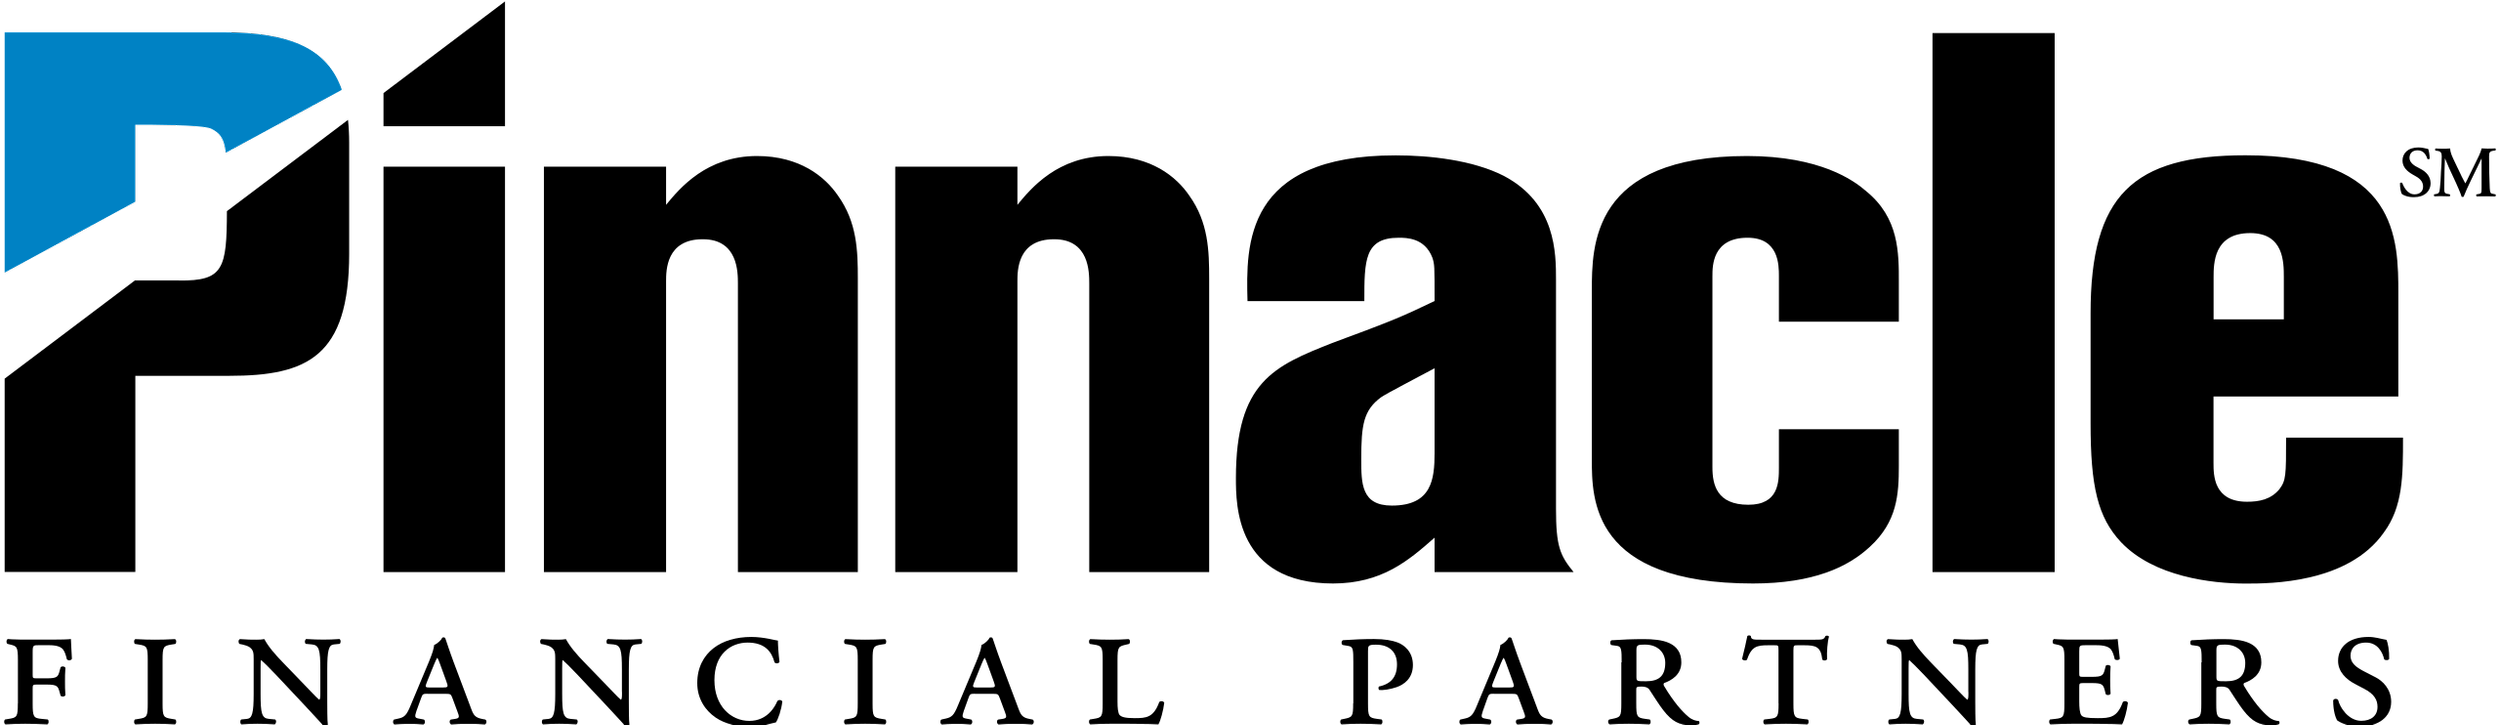 logo-pinnaclebank.png